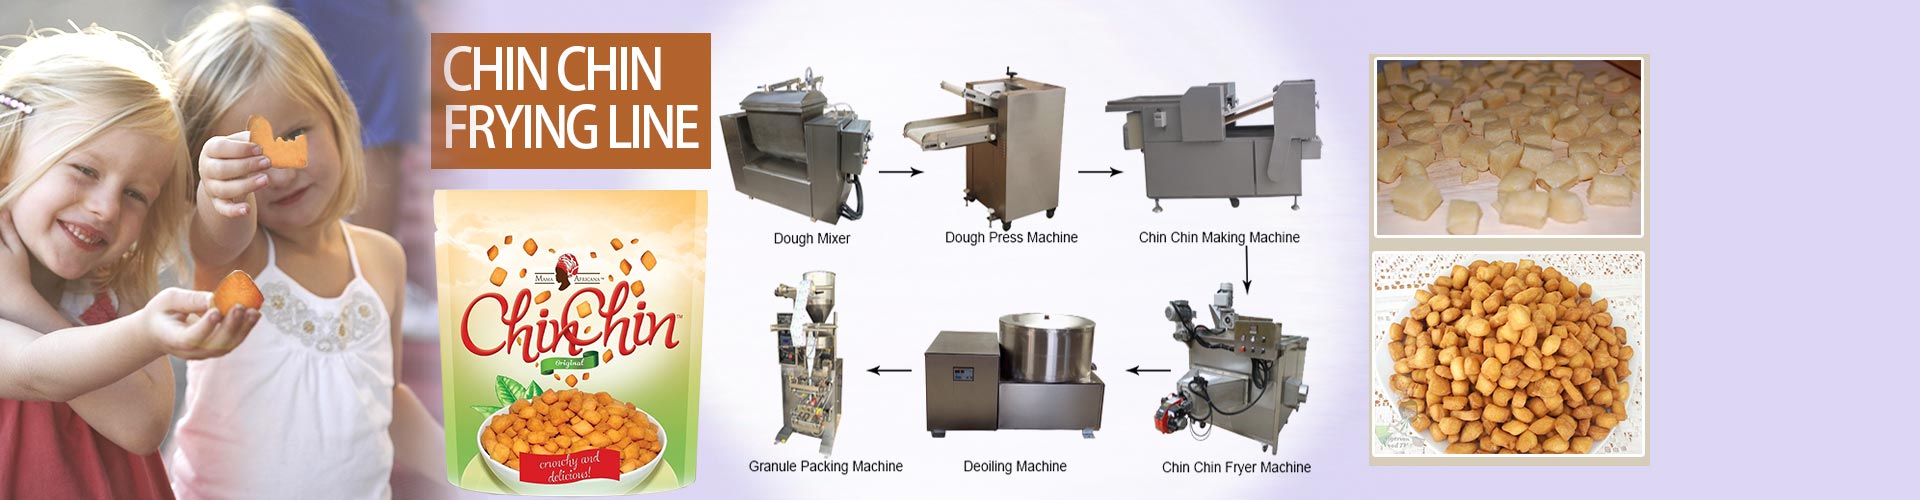 Chin Chin Production Machine